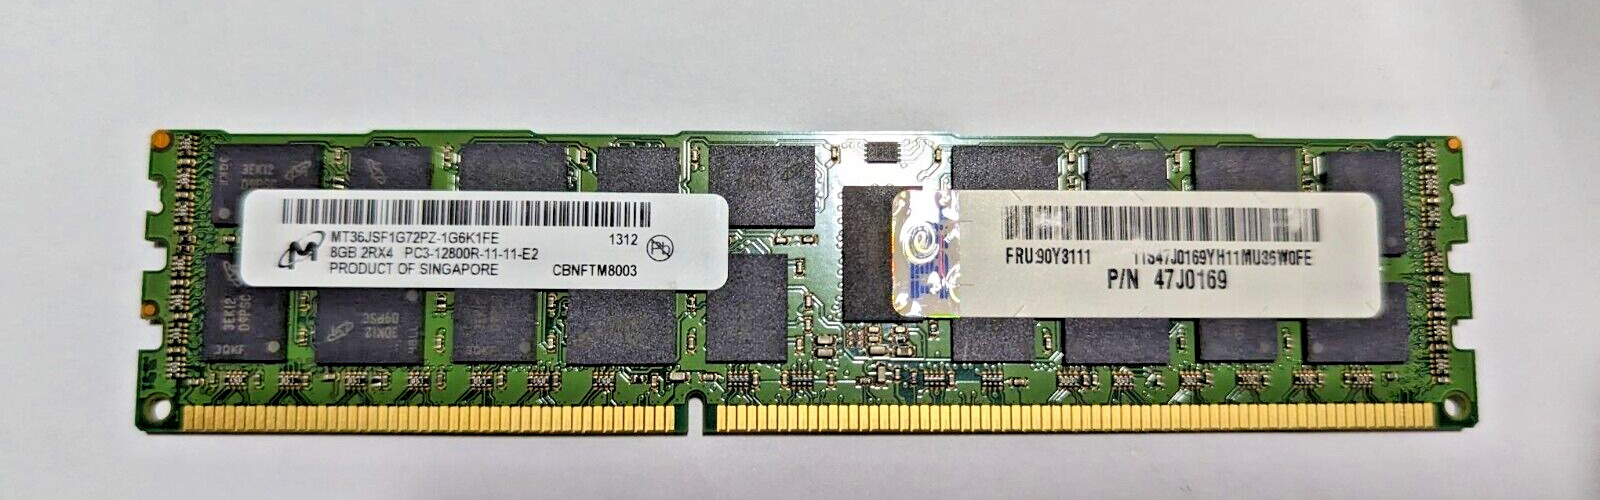 IBM 90Y3111 8GB PC3-12800 2RX4 DDR3-1600 2RX4 SERVER MT36JSF1G72PZ MICRON